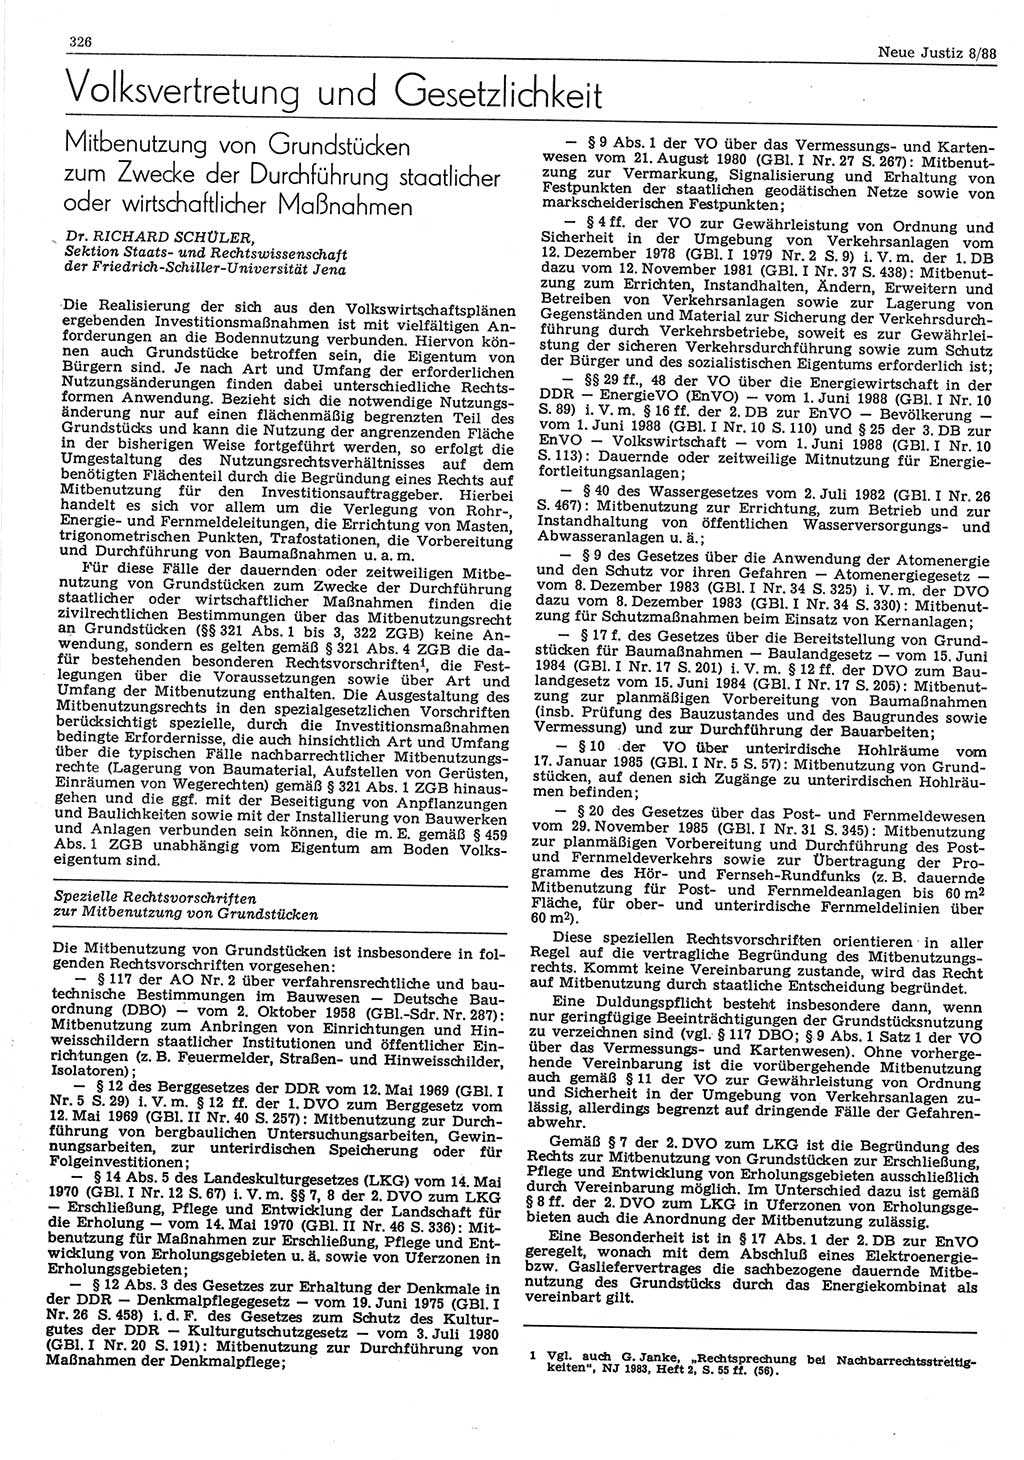 Neue Justiz (NJ), Zeitschrift für sozialistisches Recht und Gesetzlichkeit [Deutsche Demokratische Republik (DDR)], 42. Jahrgang 1988, Seite 326 (NJ DDR 1988, S. 326)